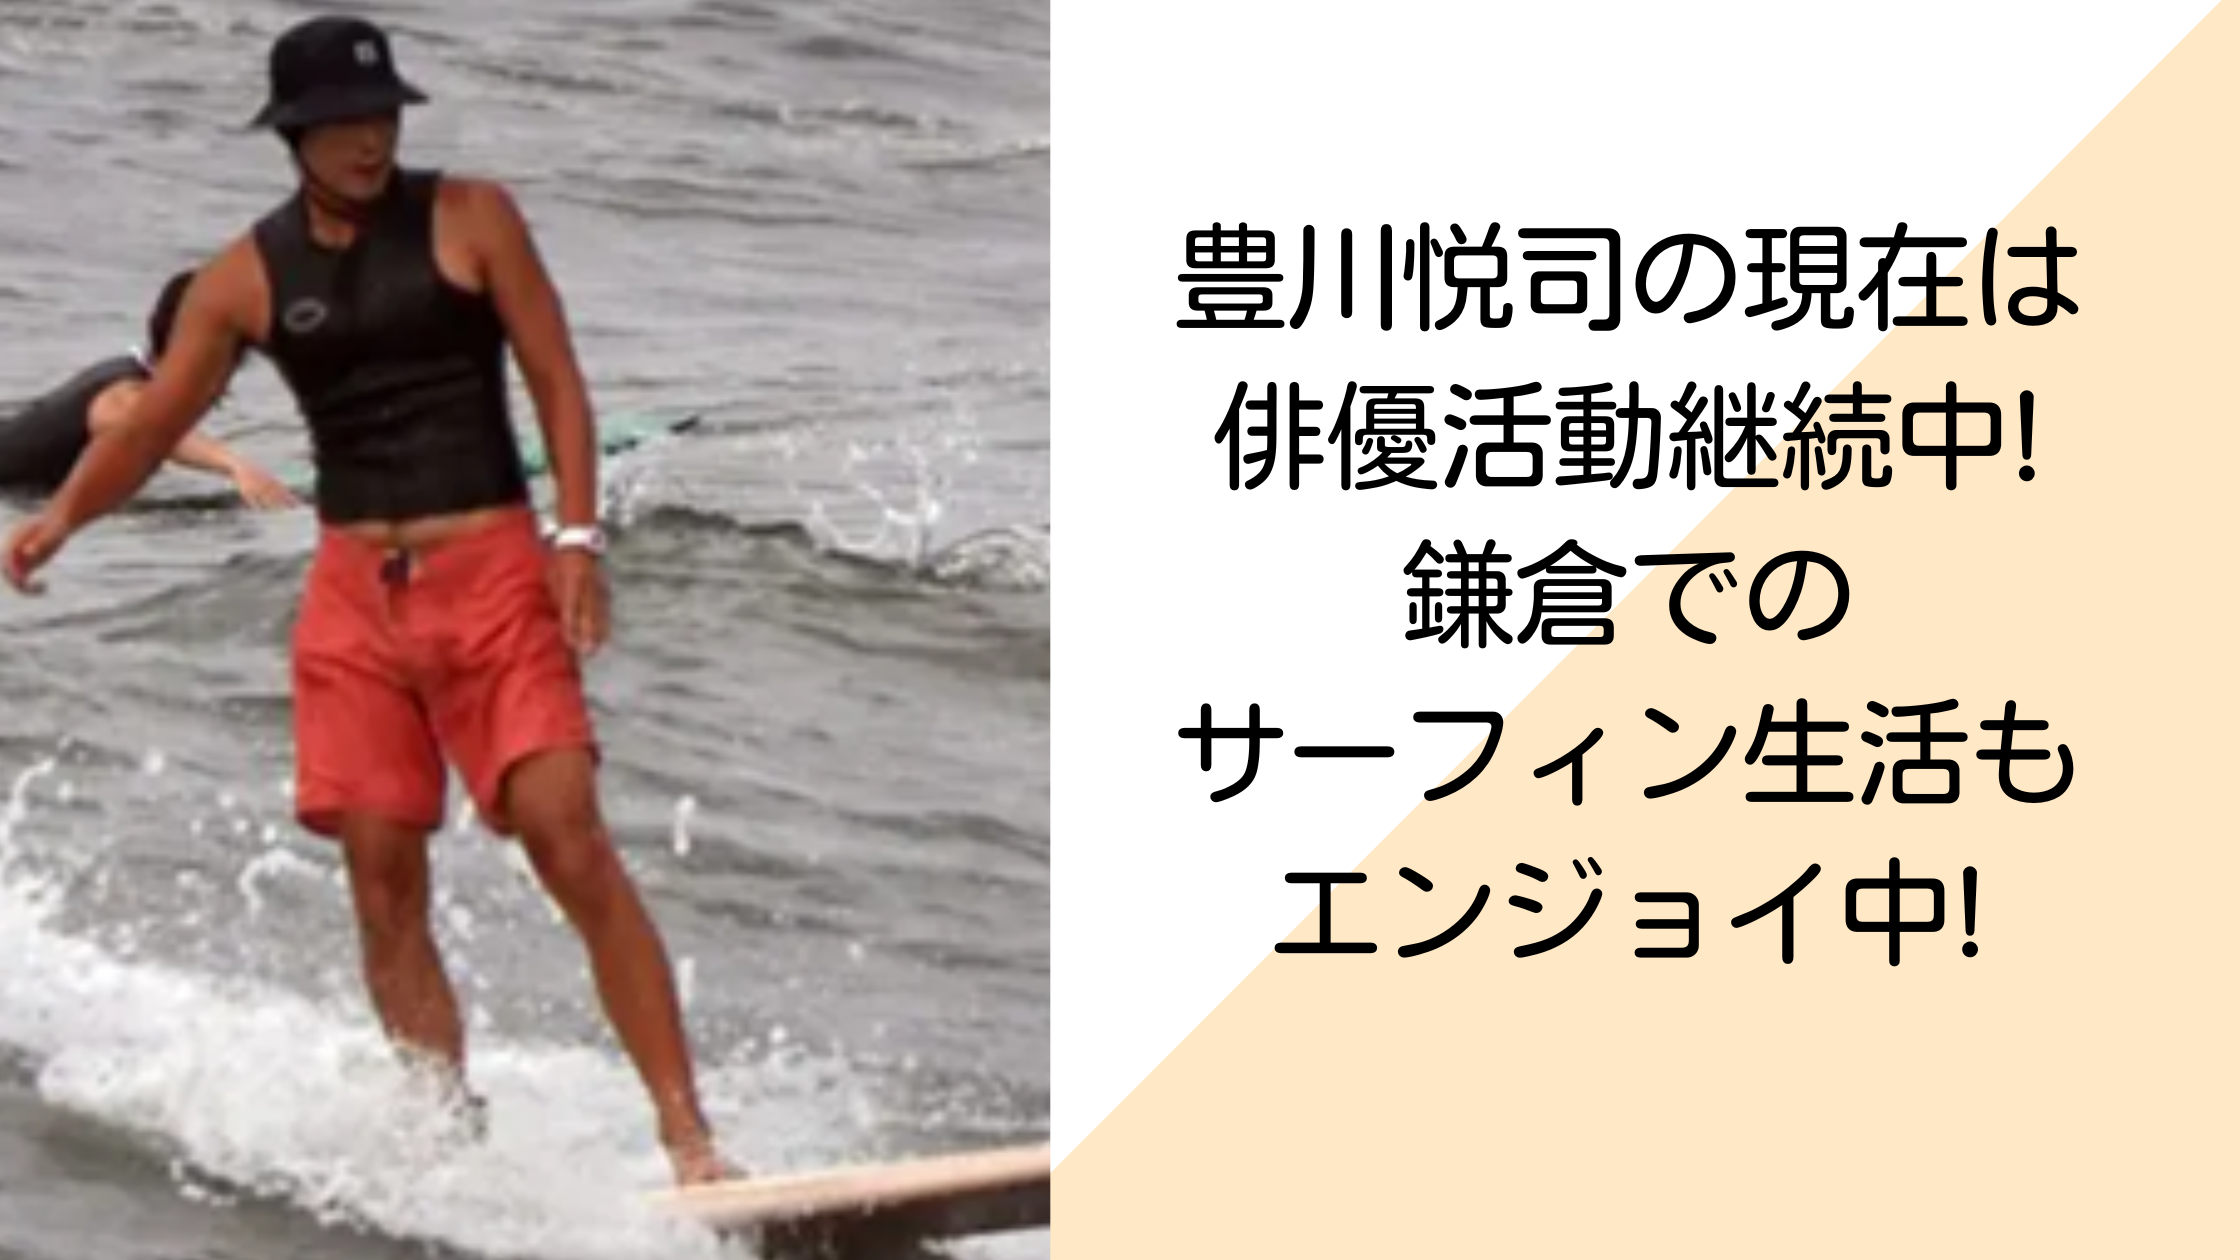 豊川悦司の現在は俳優活動継続中!鎌倉でのサーフィン生活もエンジョイ中!